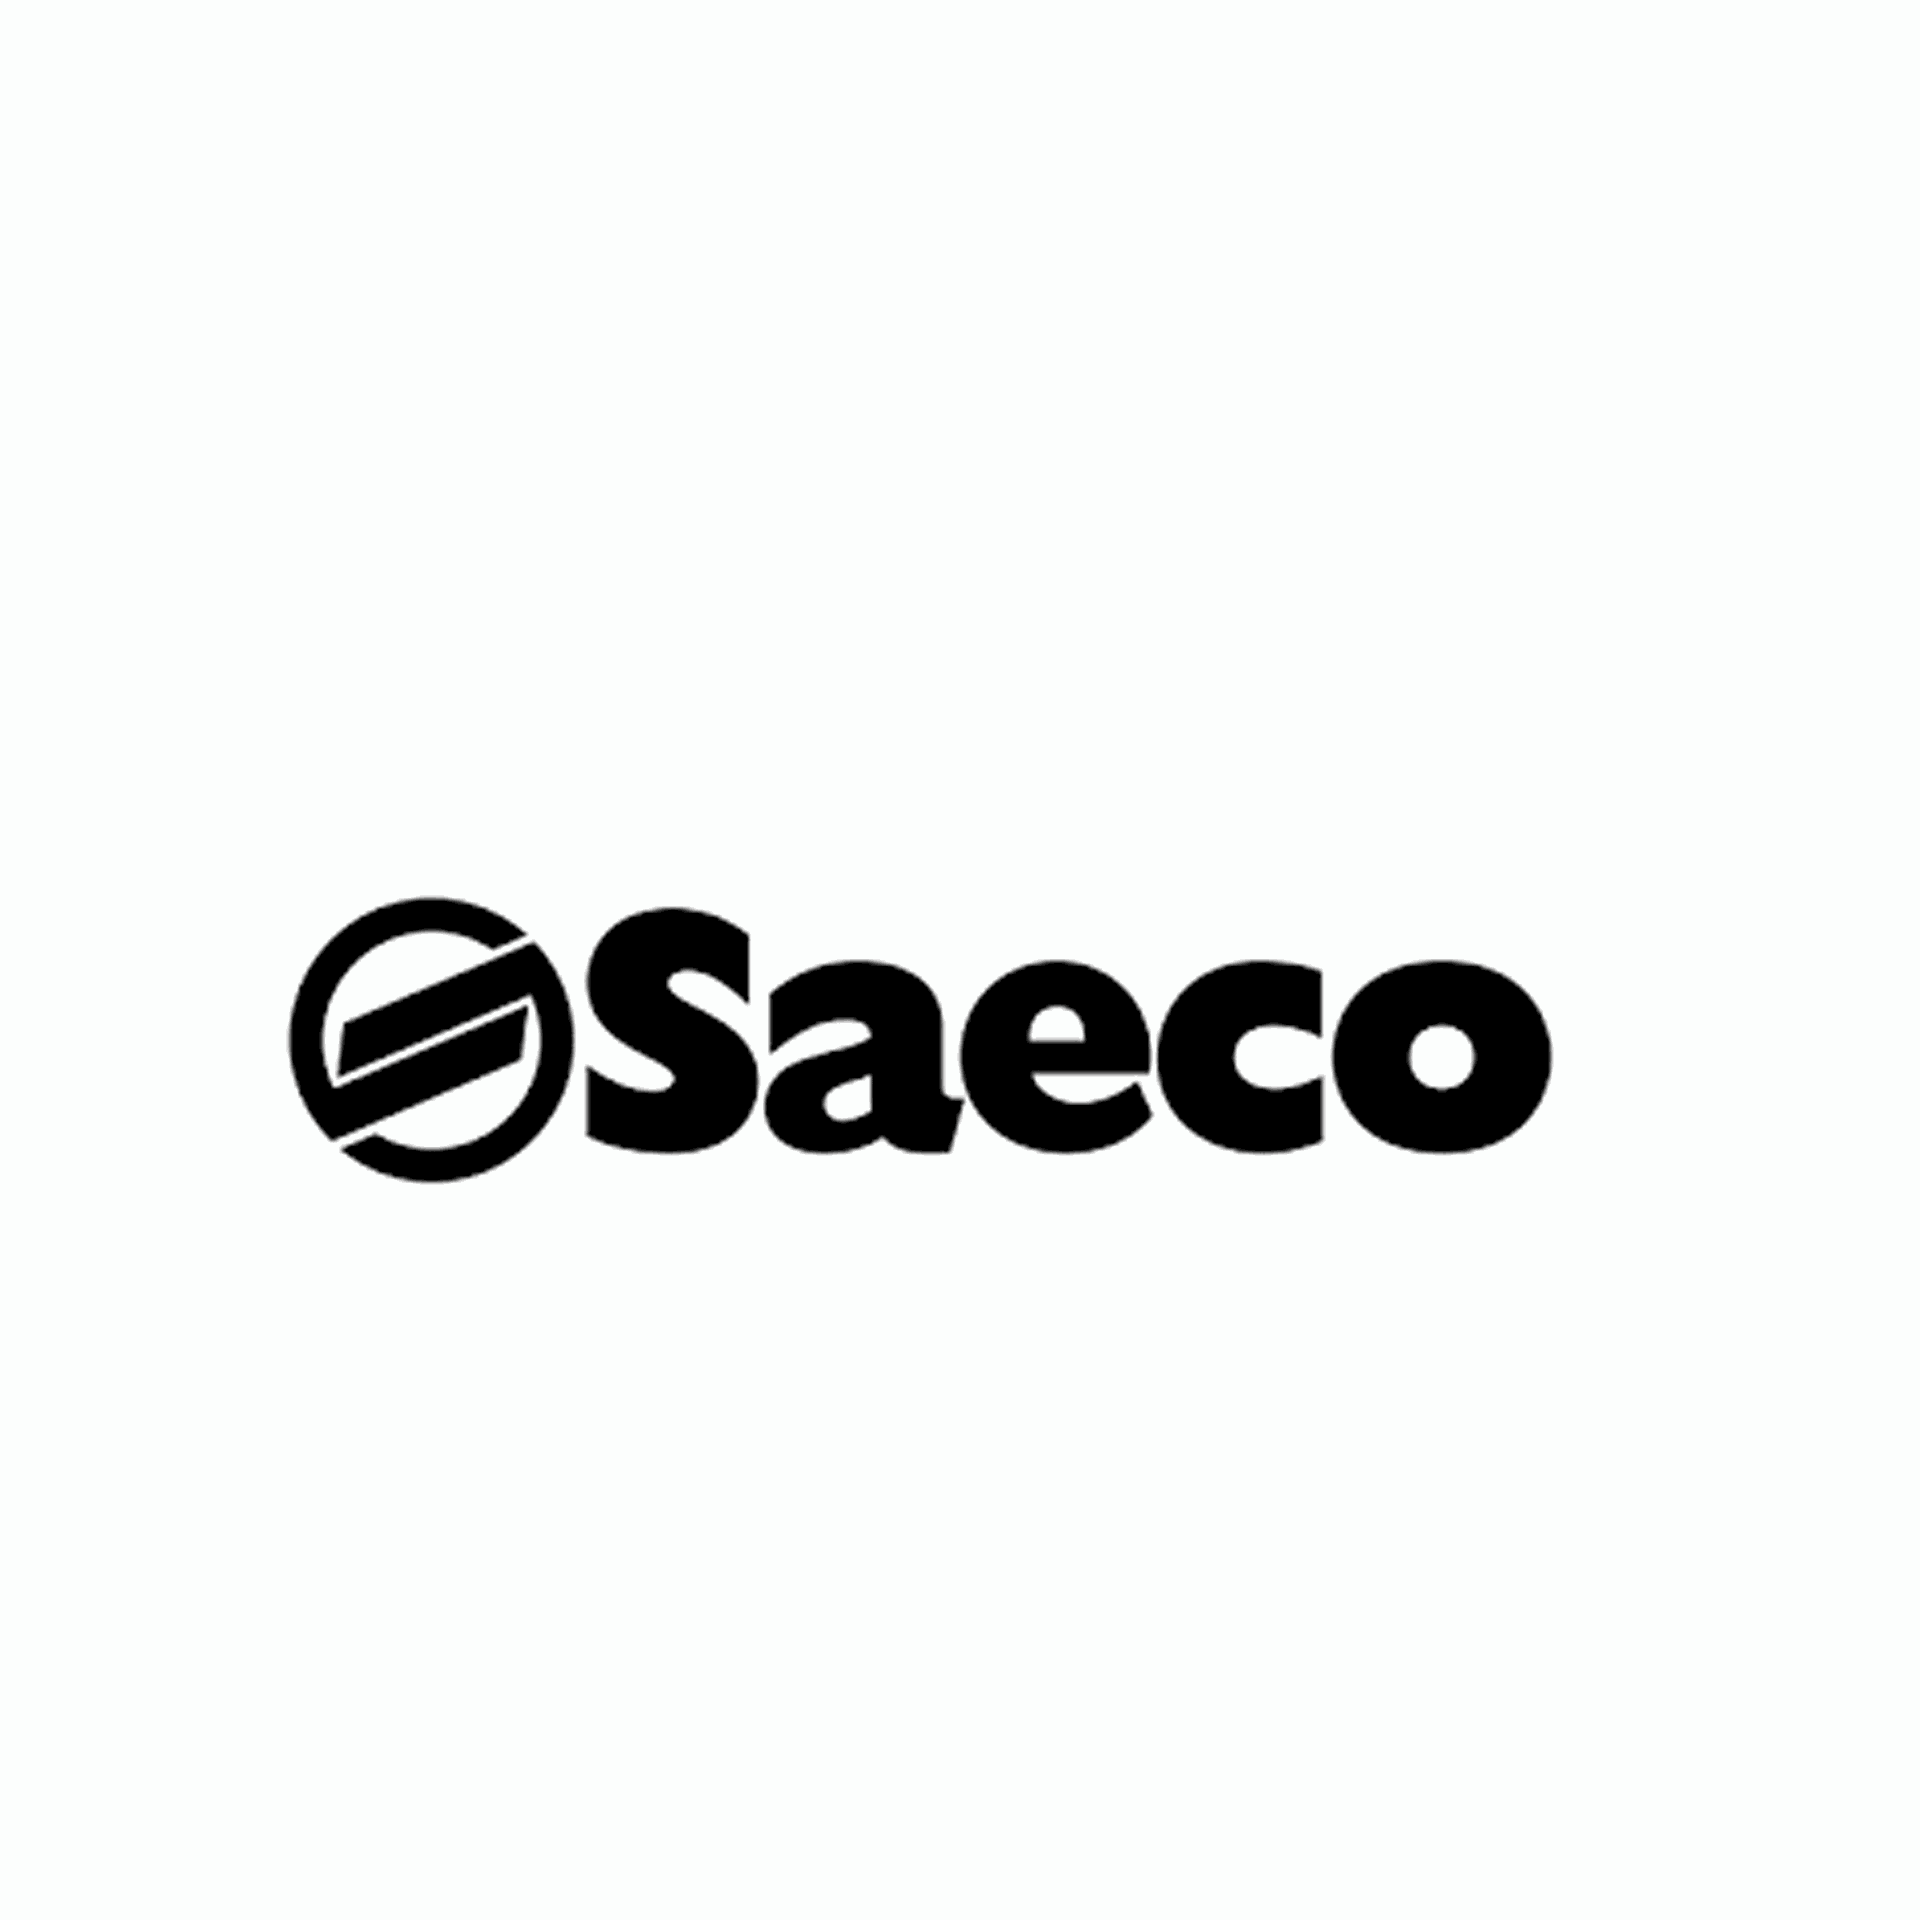 Brand: Saeco